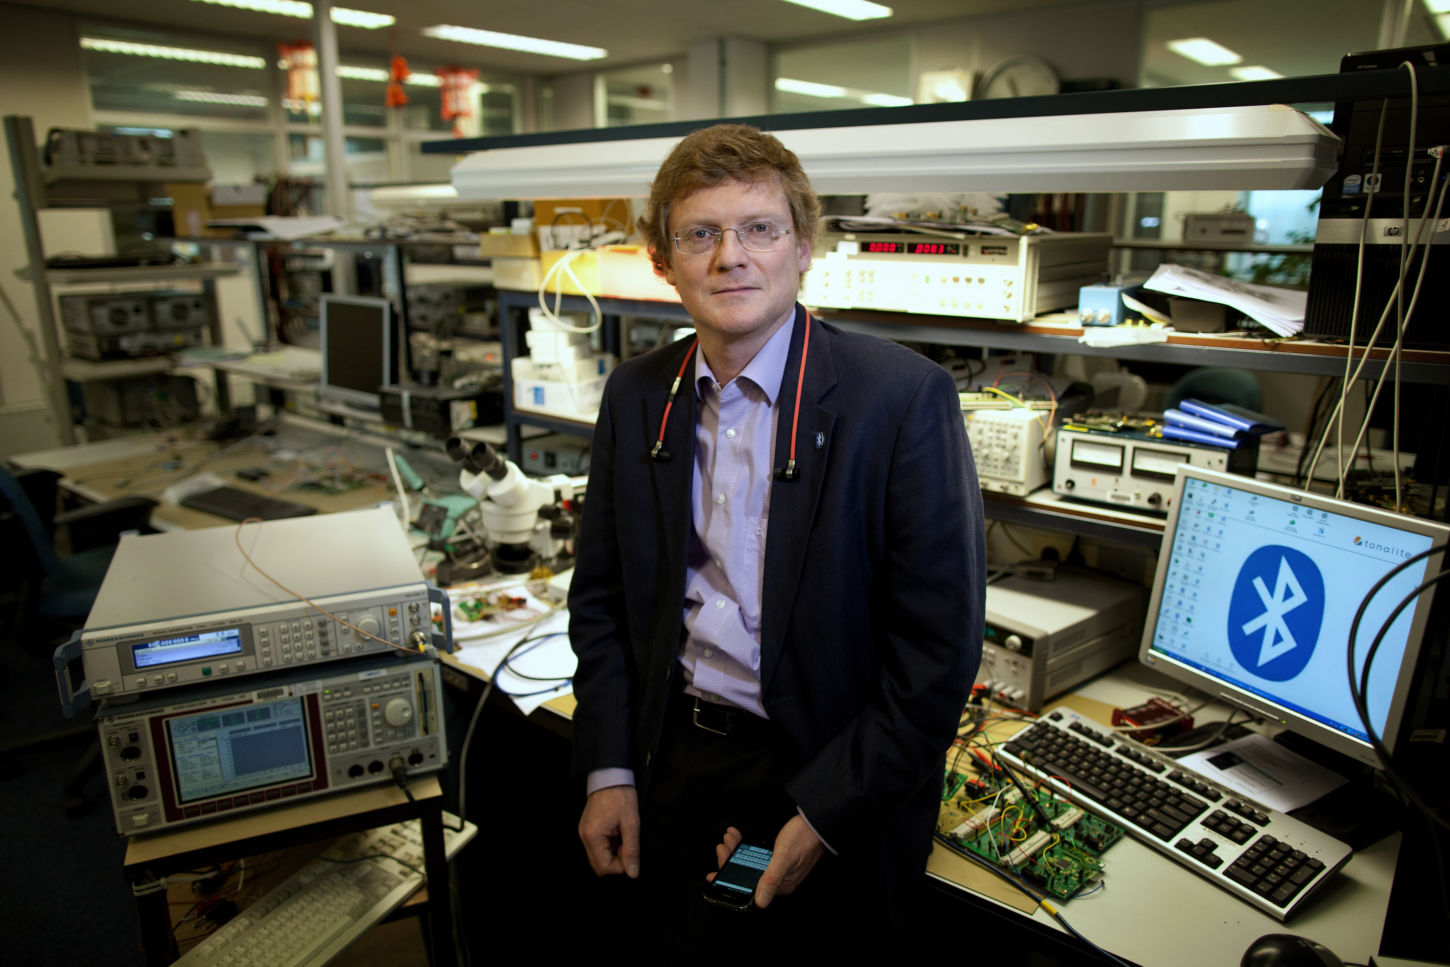 En mann sitter på et arbeidsbord i et teknisk laboratorium. Det er flere apparater og datamaskiner i bakgrunnen, og på en av skjermene vises Bluetooth-logoen.